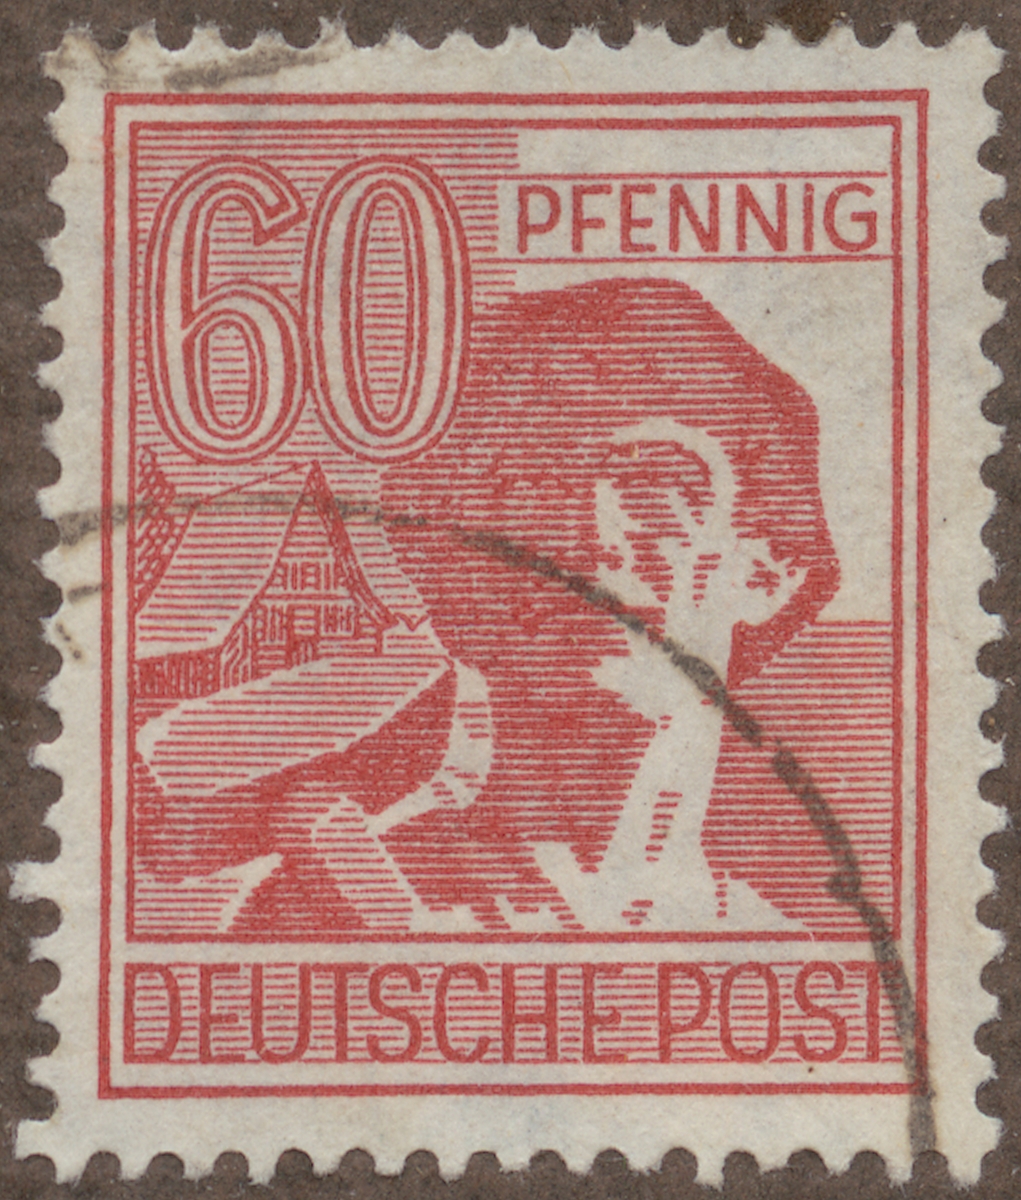 Frimärke ur Gösta Bodmans filatelistiska motivsamling, påbörjad 1950.
Frimärke från Tyskland, 1947. Motiv av Tysk gruvarbetare